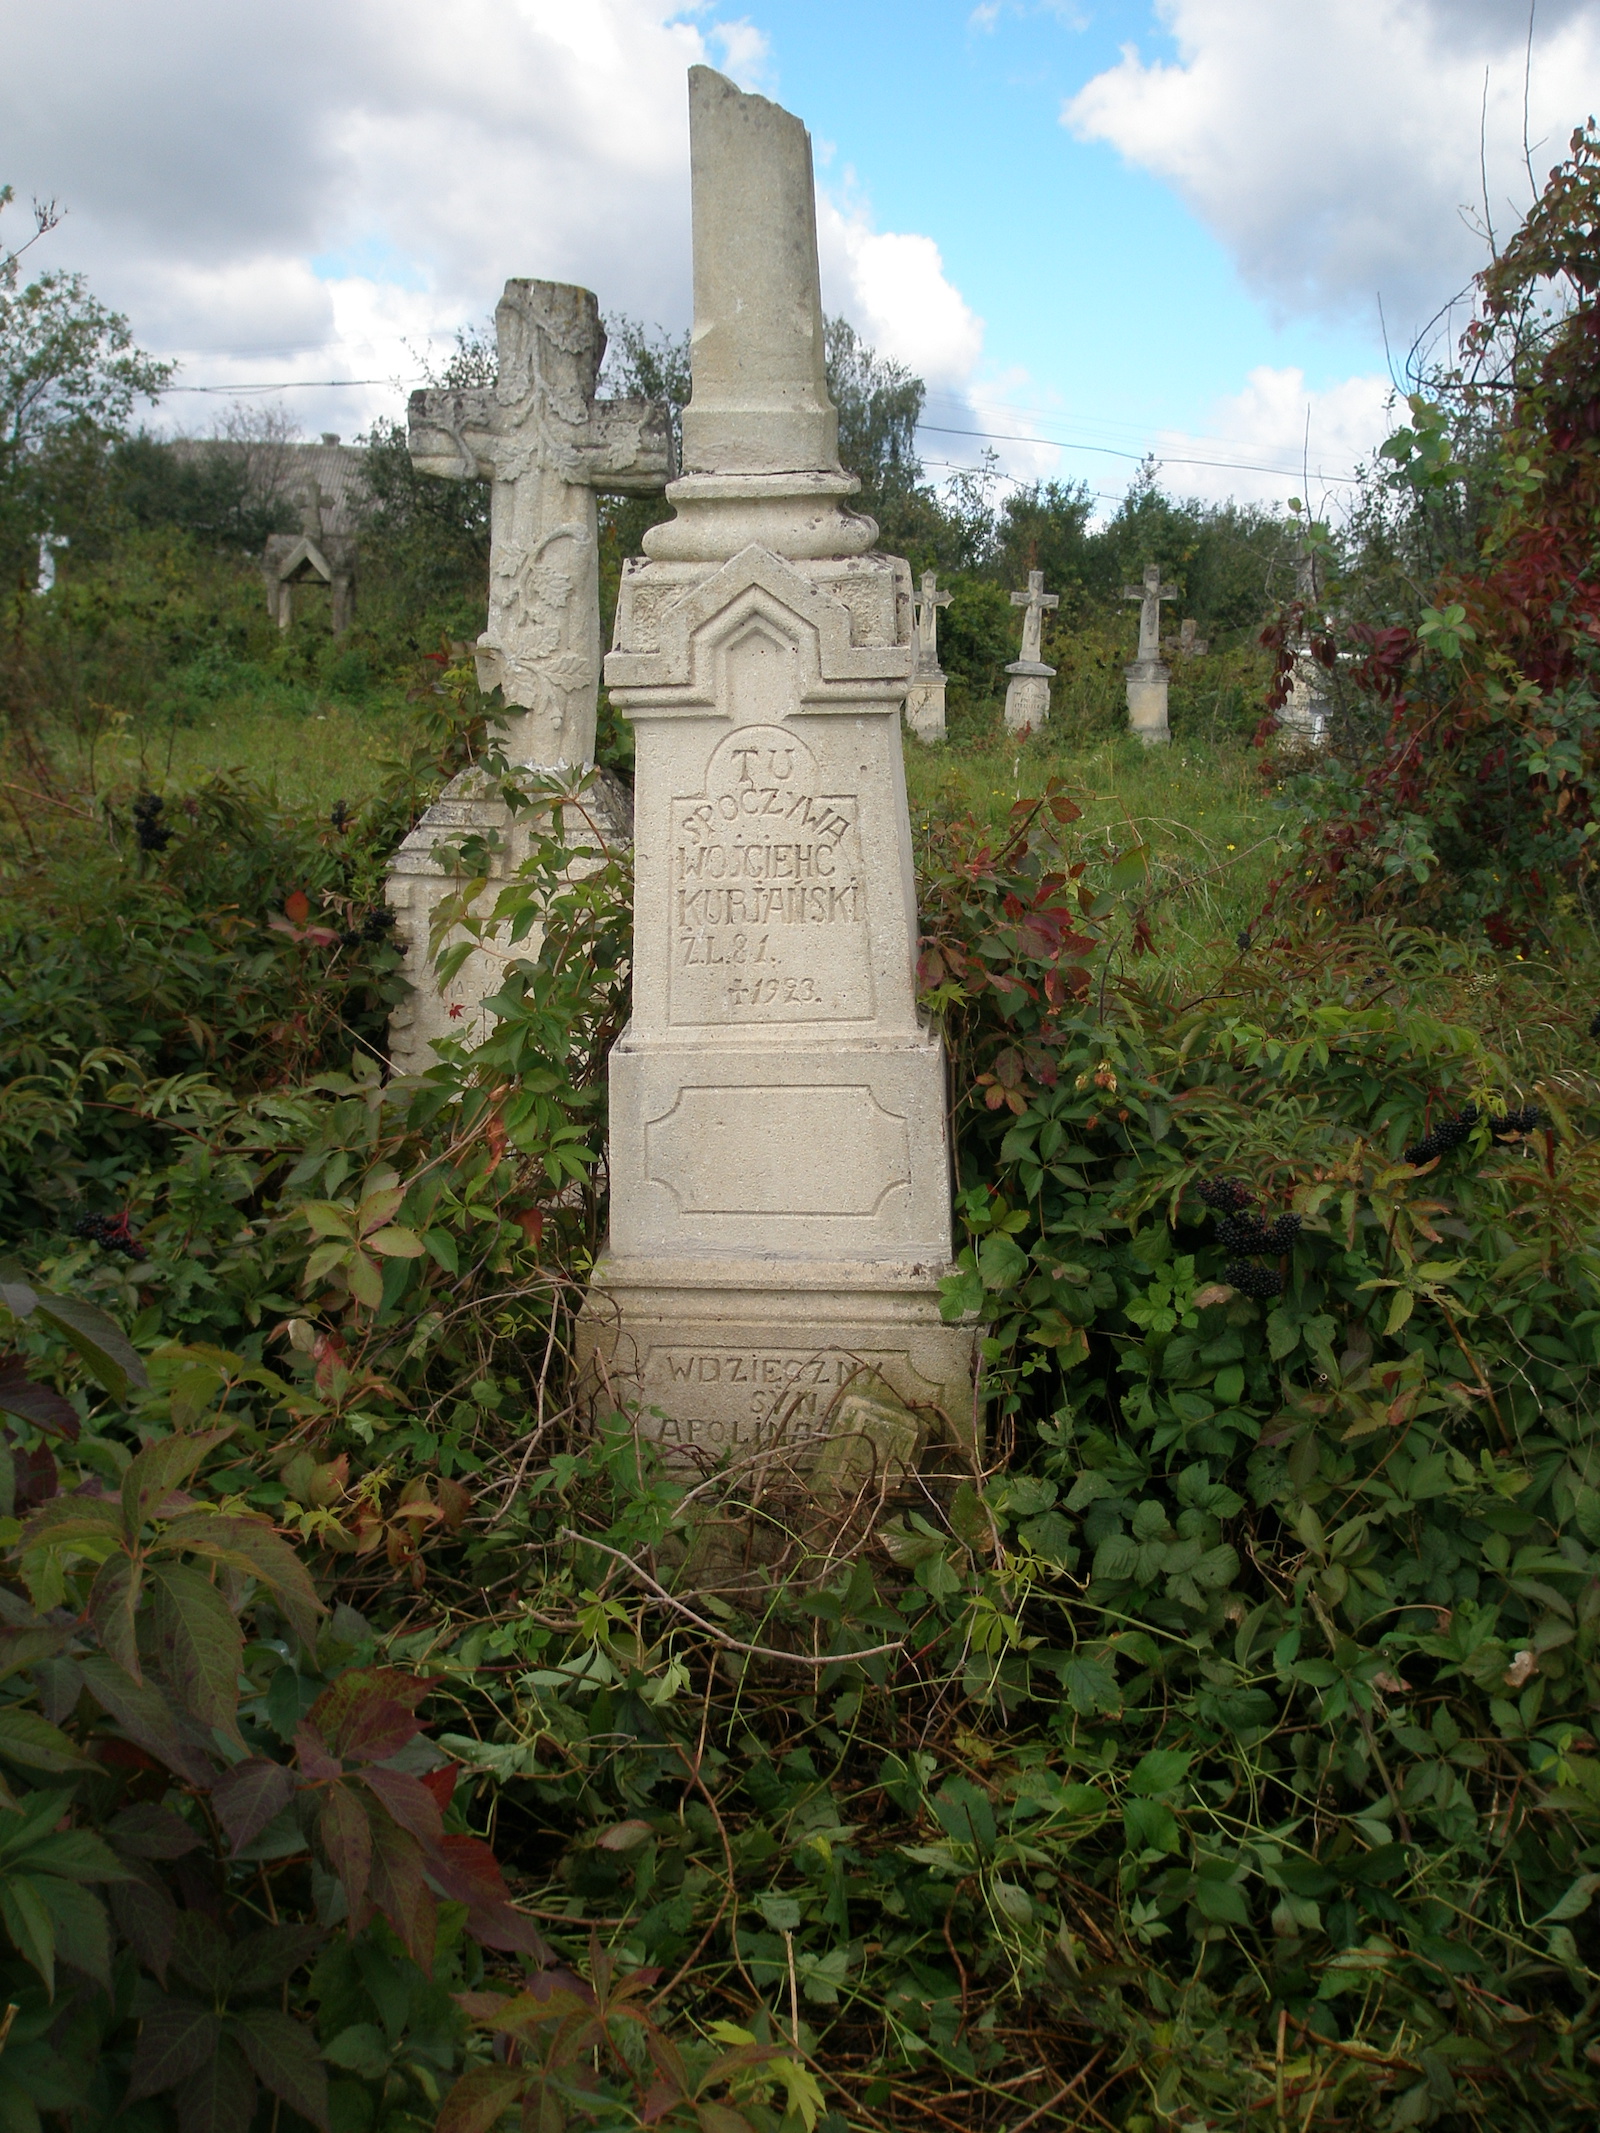 Tombstone of Wojciech Kuriański, Jazłowiec cemetery, as of 2006.